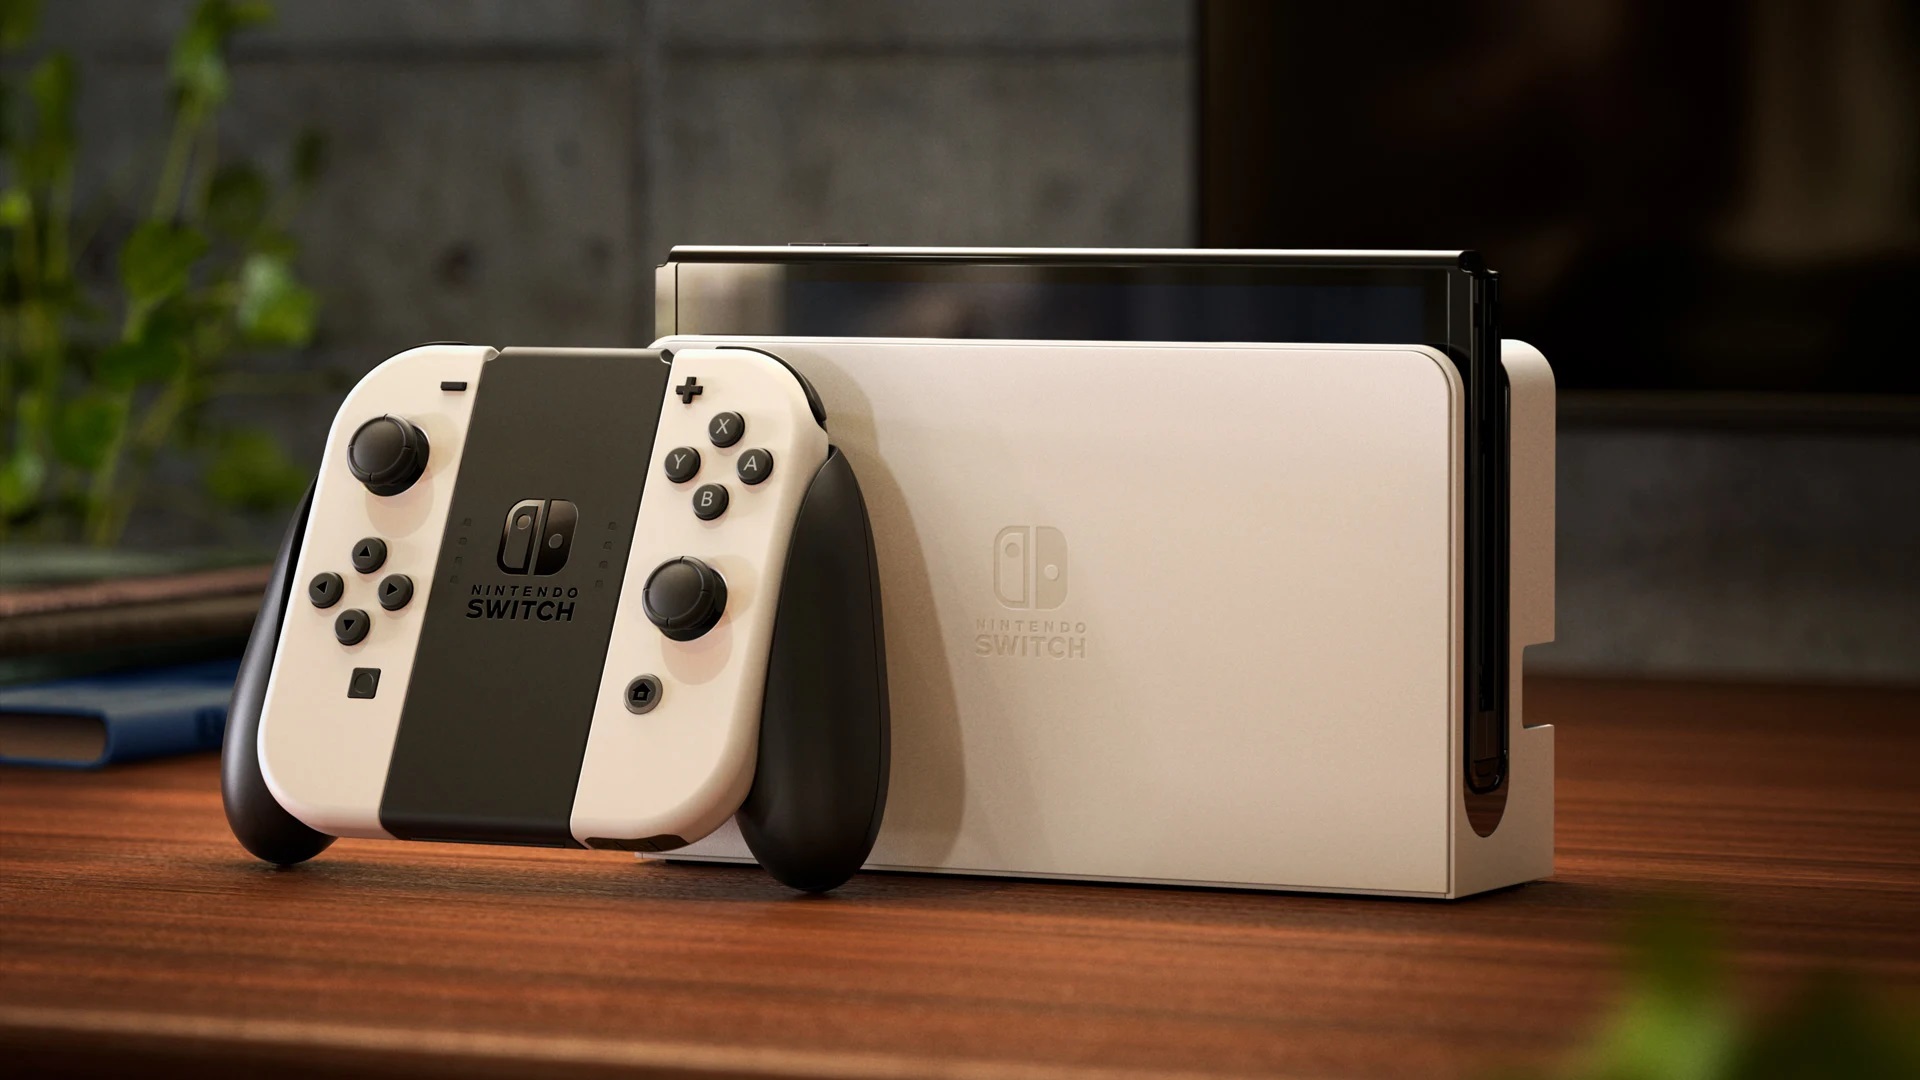 Nintendo Switch (OLED) zaprezentowane: odświeżona konsola do gier z 7-calowym wyświetlaczem OLED za 350 dolarów